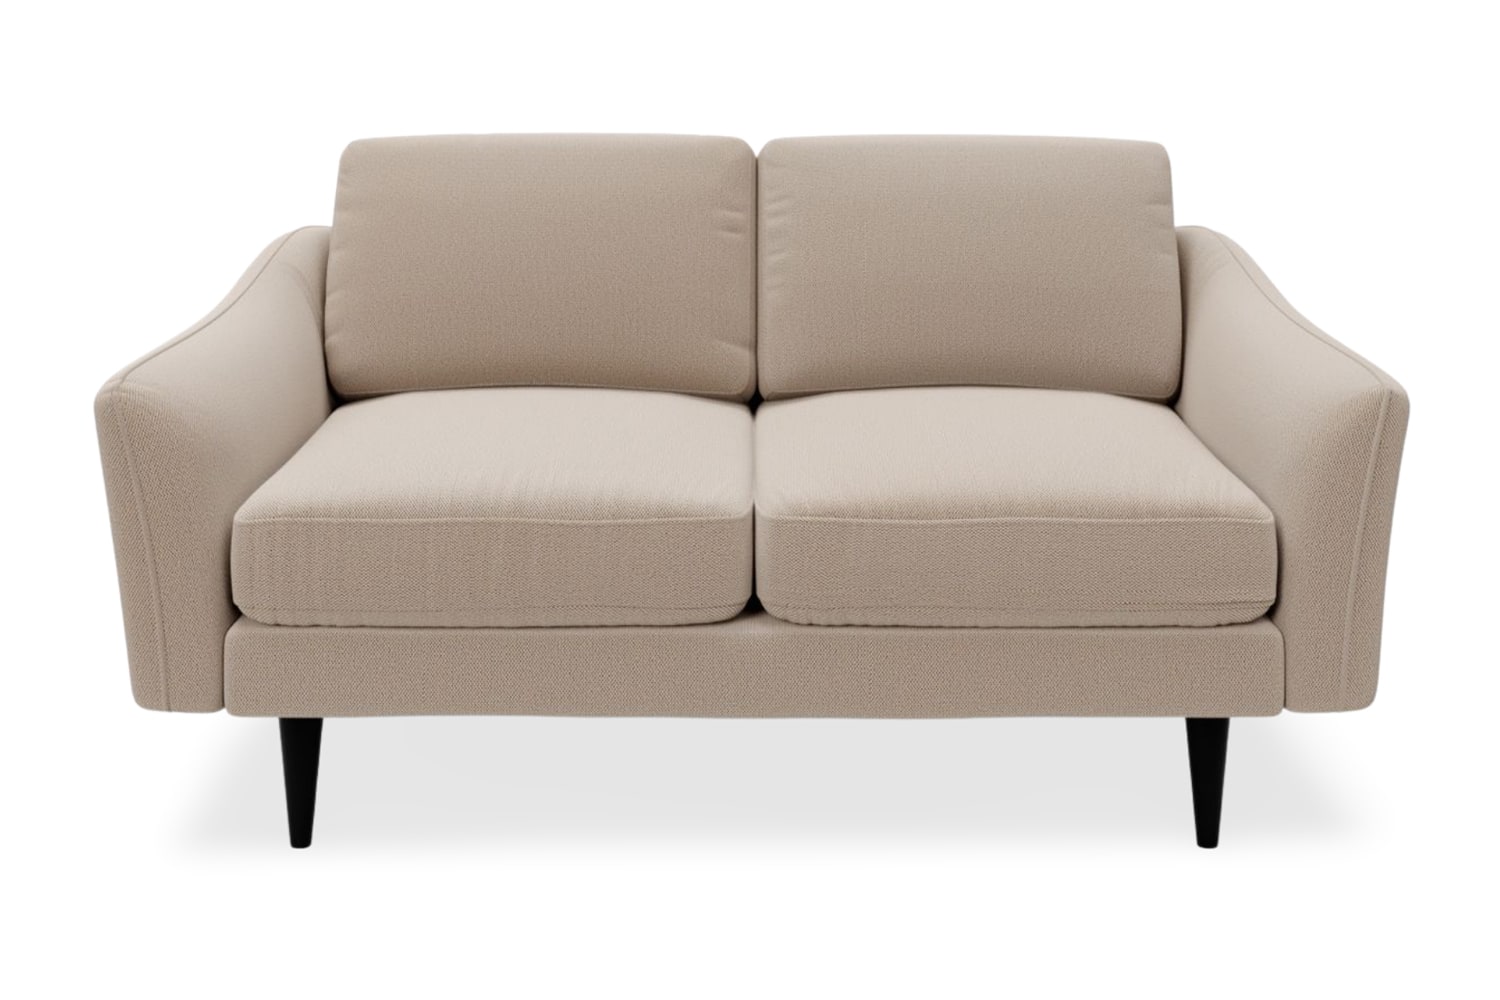 SNUG | The Rebel 2 Seater Sofa in Oatmeal variant_40414889541680